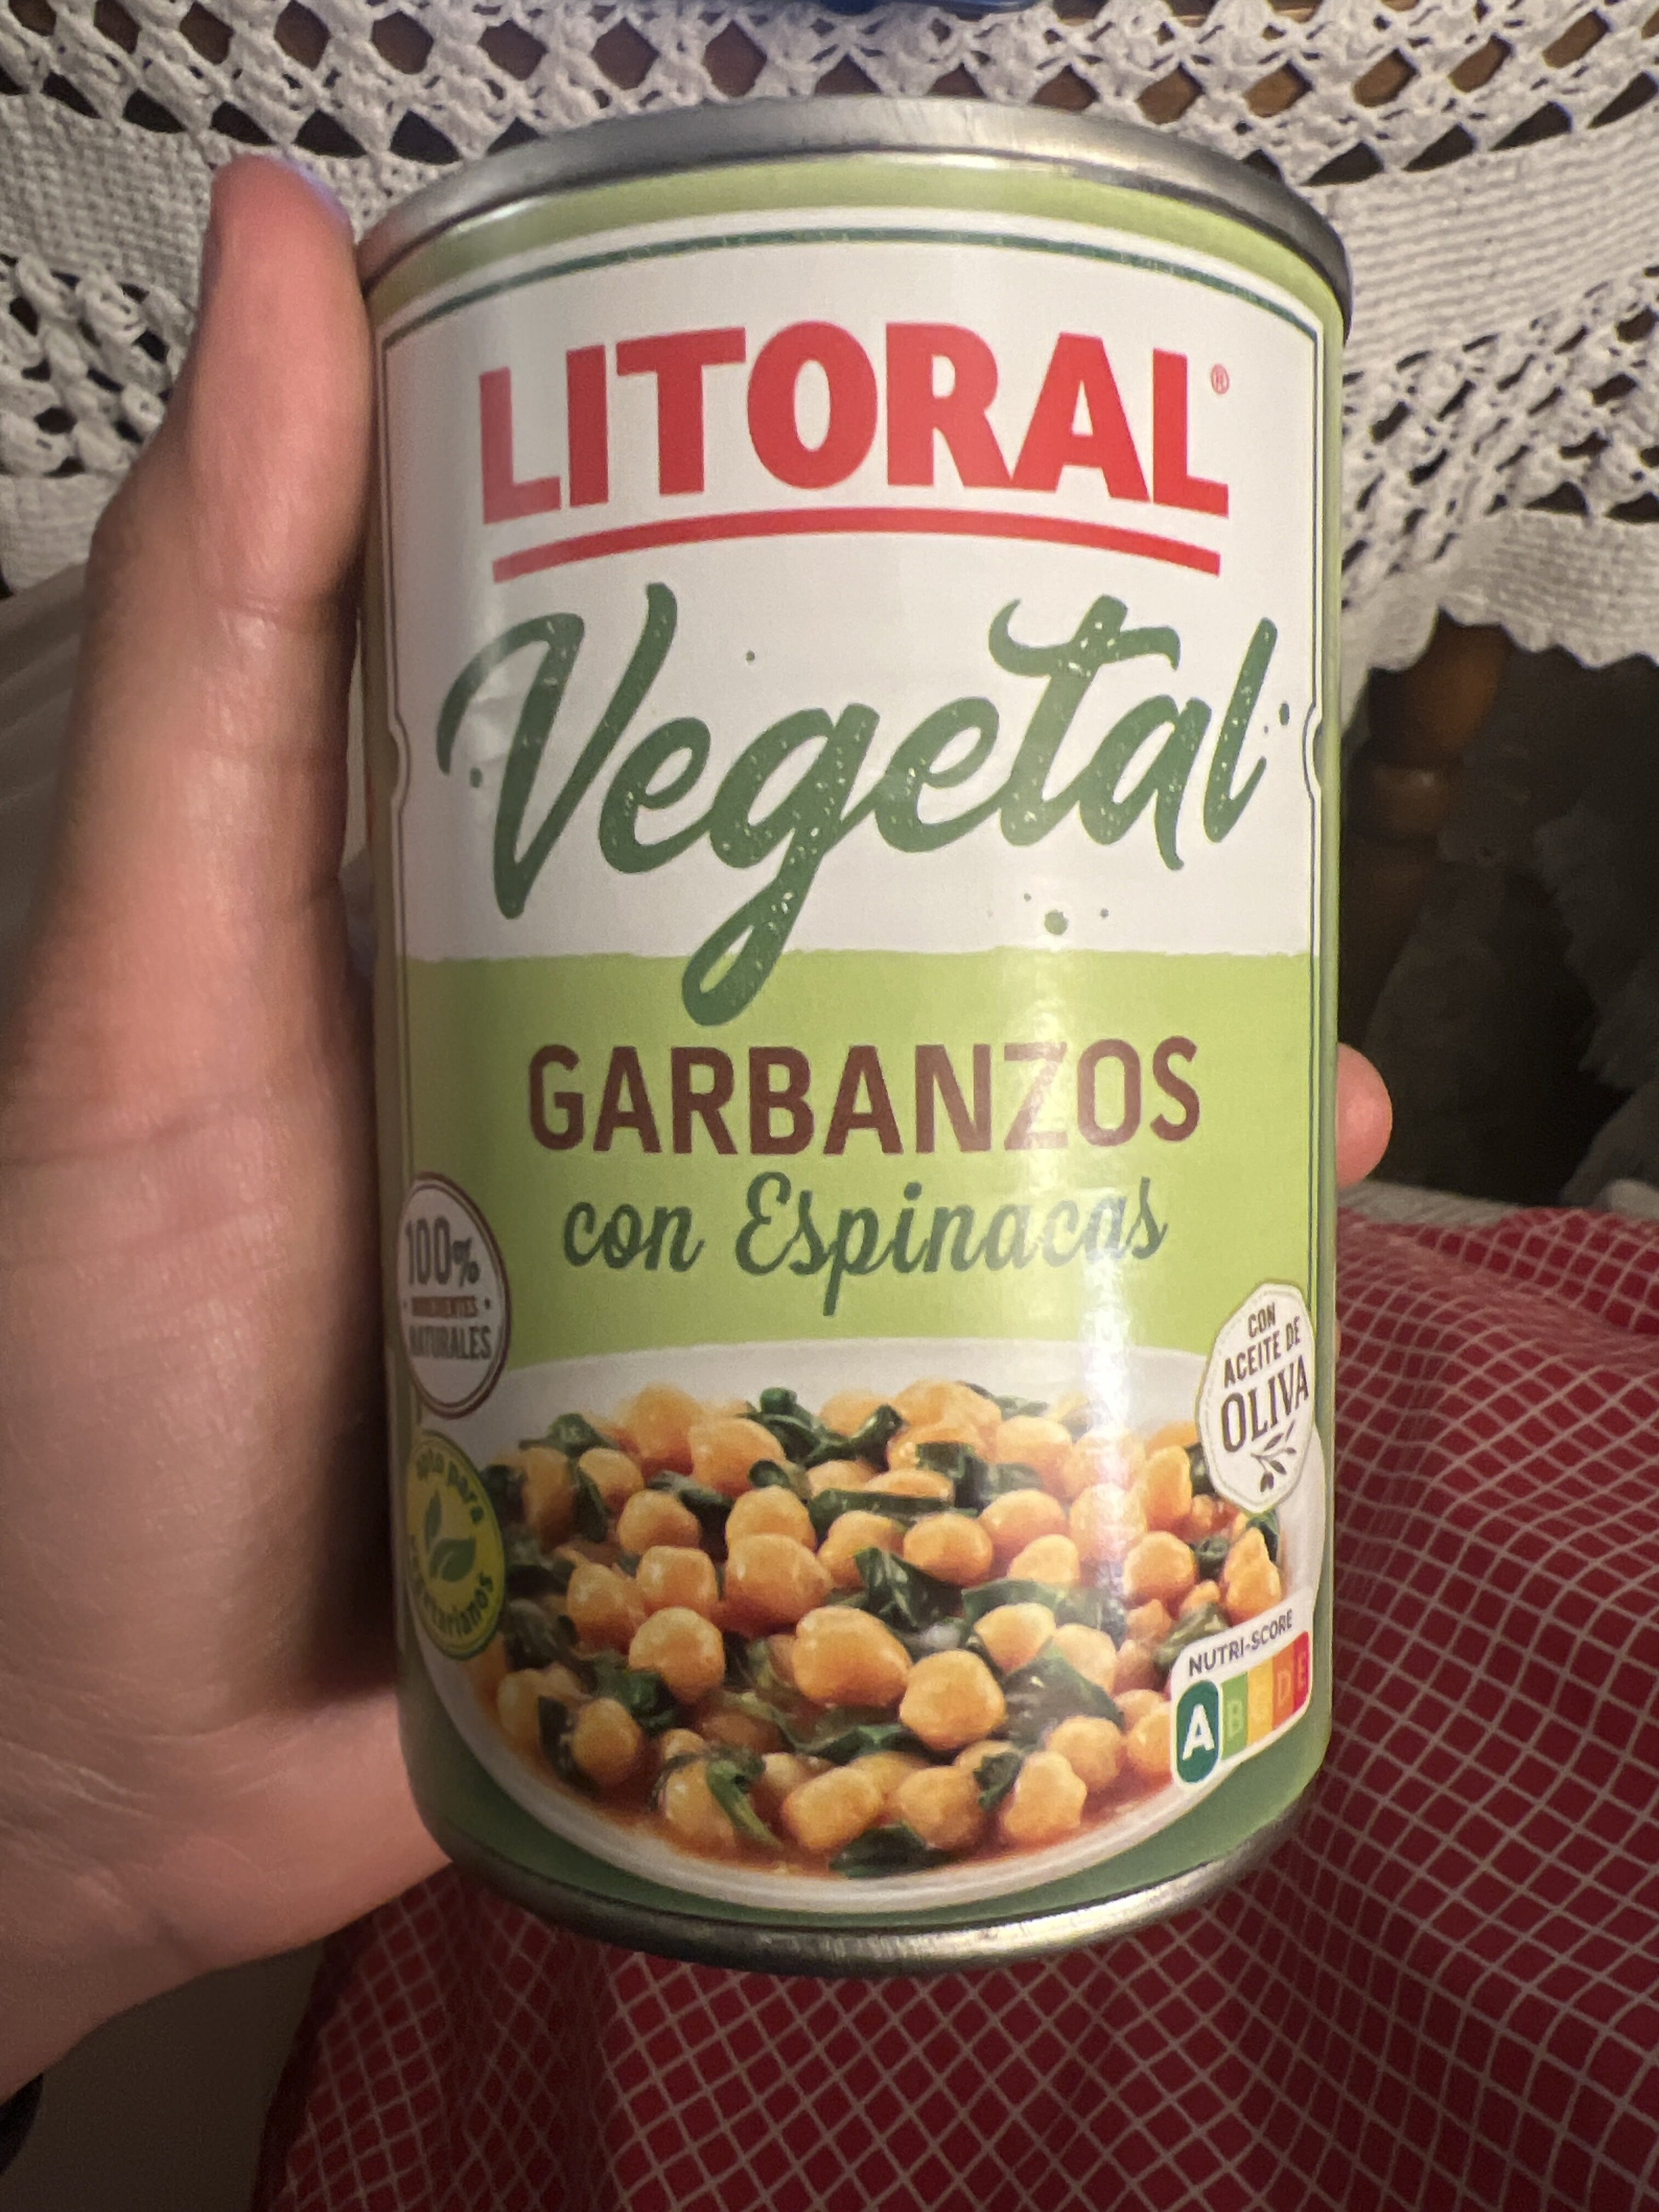 Vegetal garbanzos con espinacas - Produktua - en